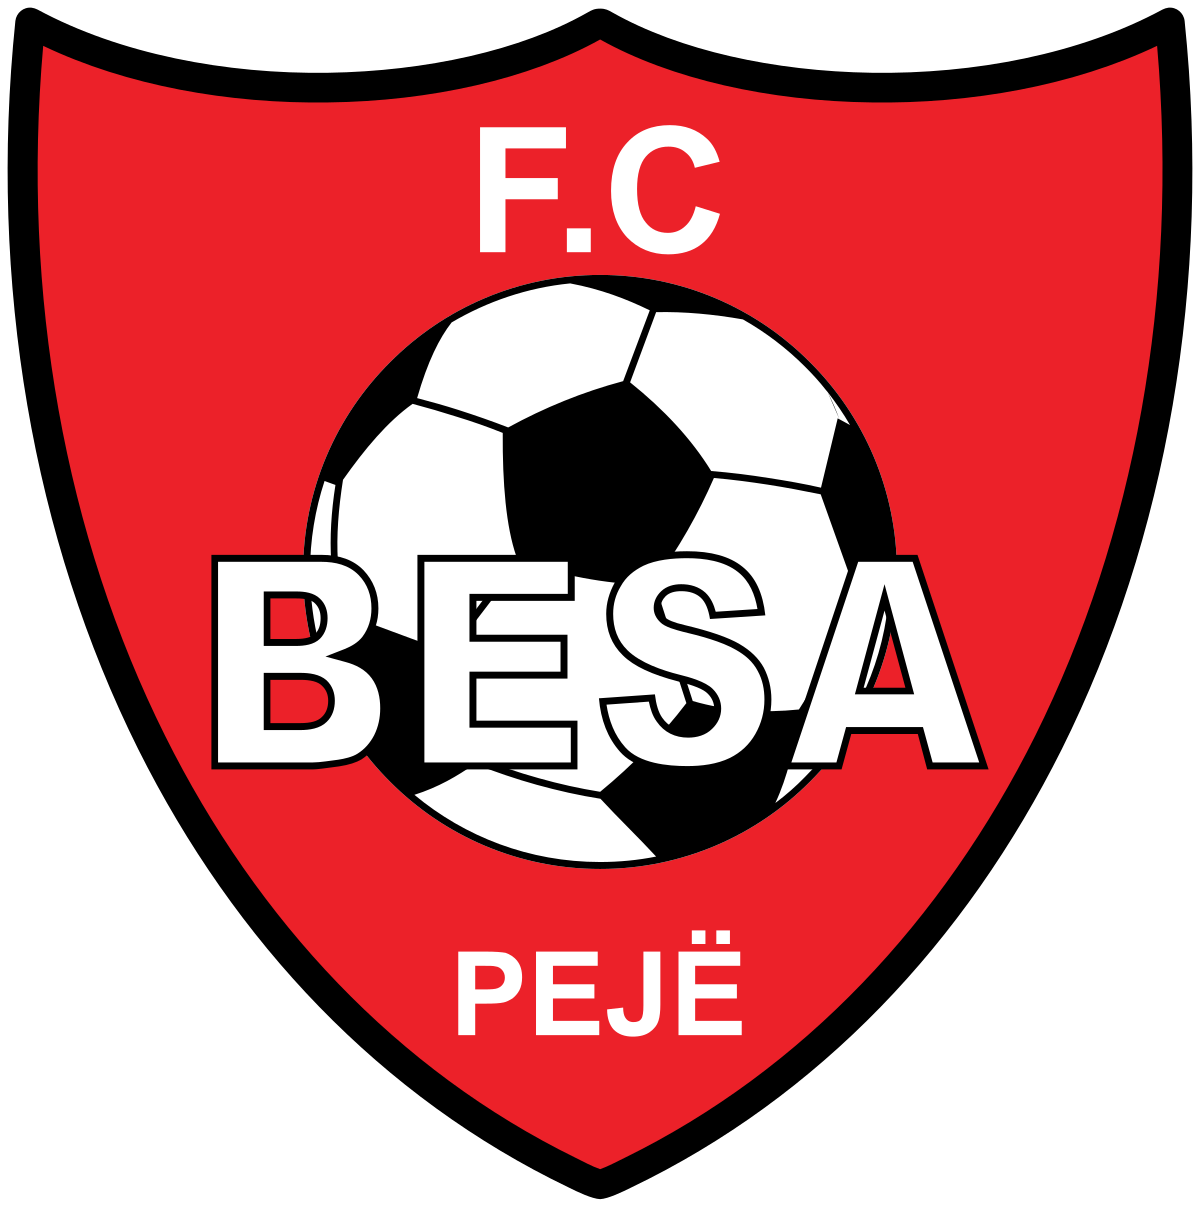 Besa Peje logo